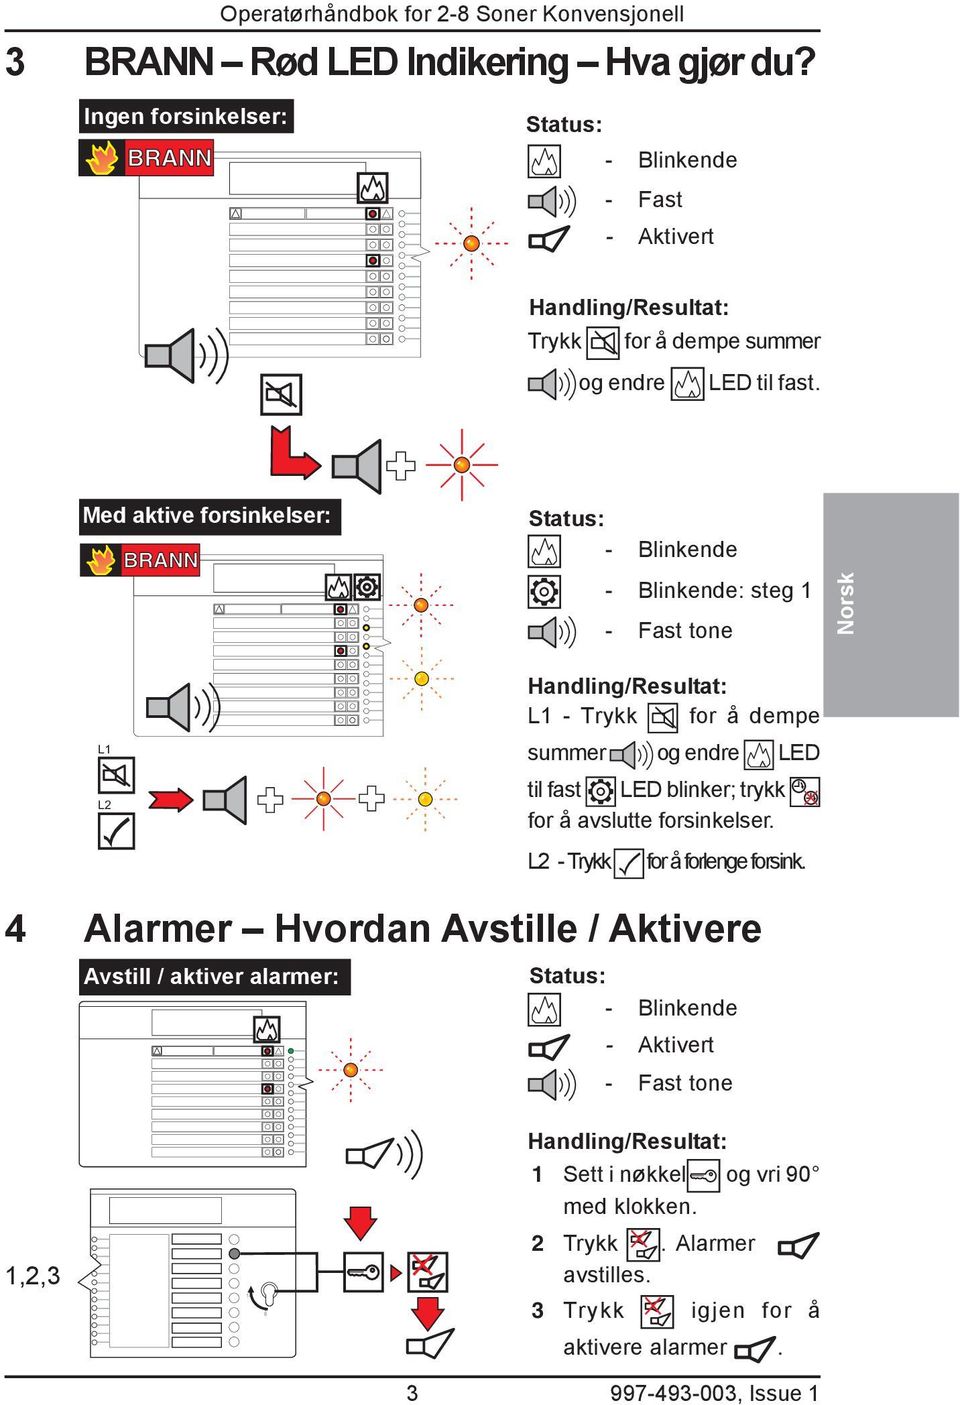 Med aktive forsinkelser: BRANN - Blinkende - Blinkende: steg - Fast tone Norsk L L Handling/Resultat: L - Trykk for å dempe summer og endre LED til fast LED blinker;